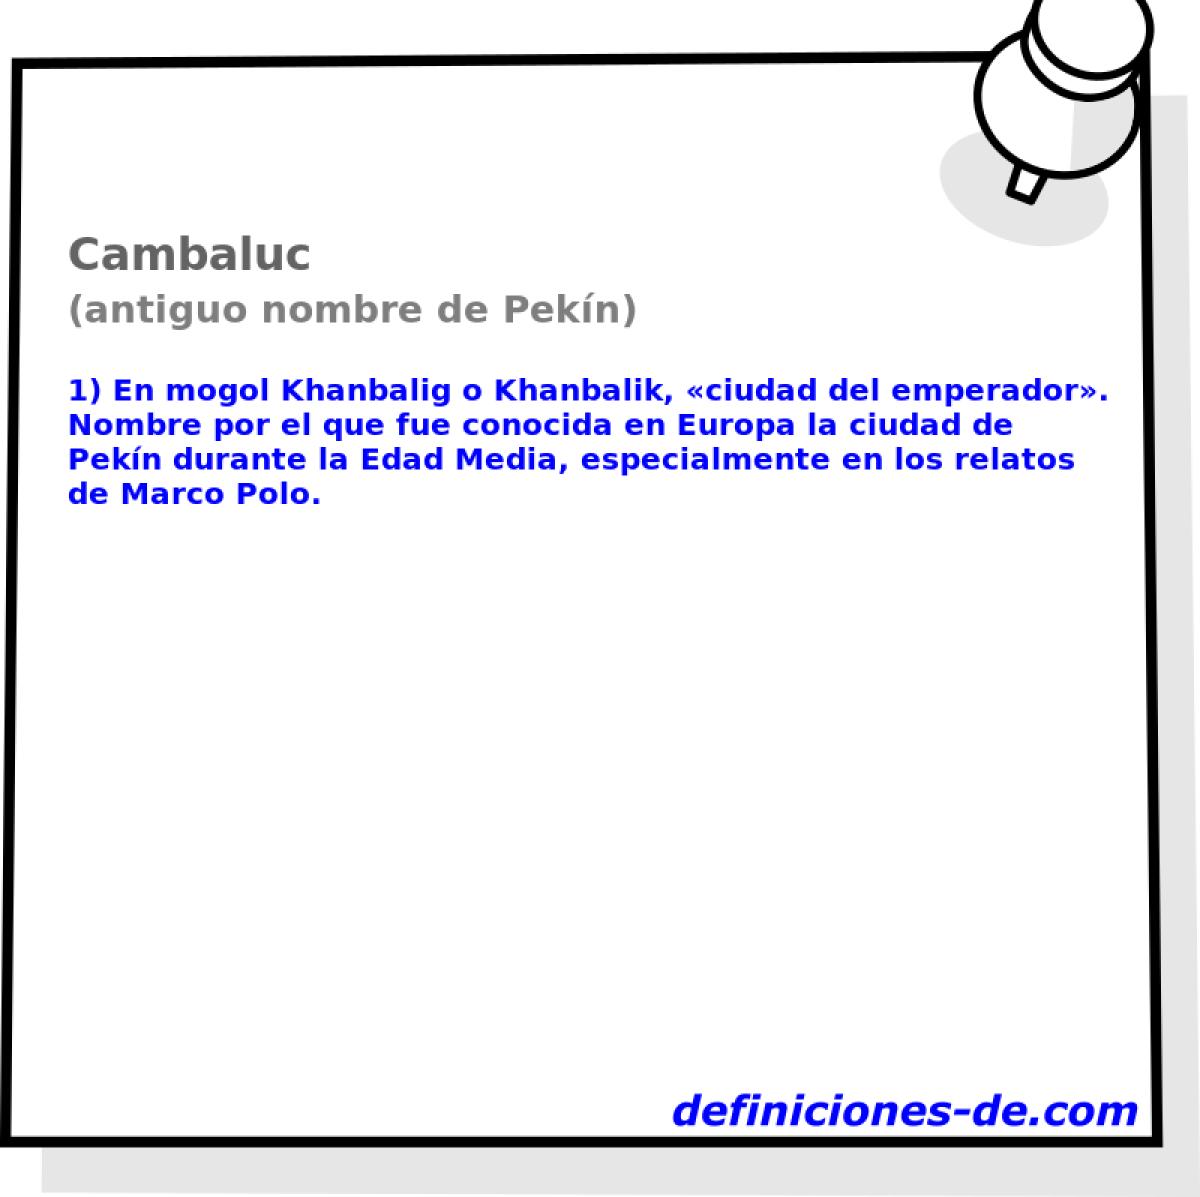 Cambaluc (antiguo nombre de Pekn)